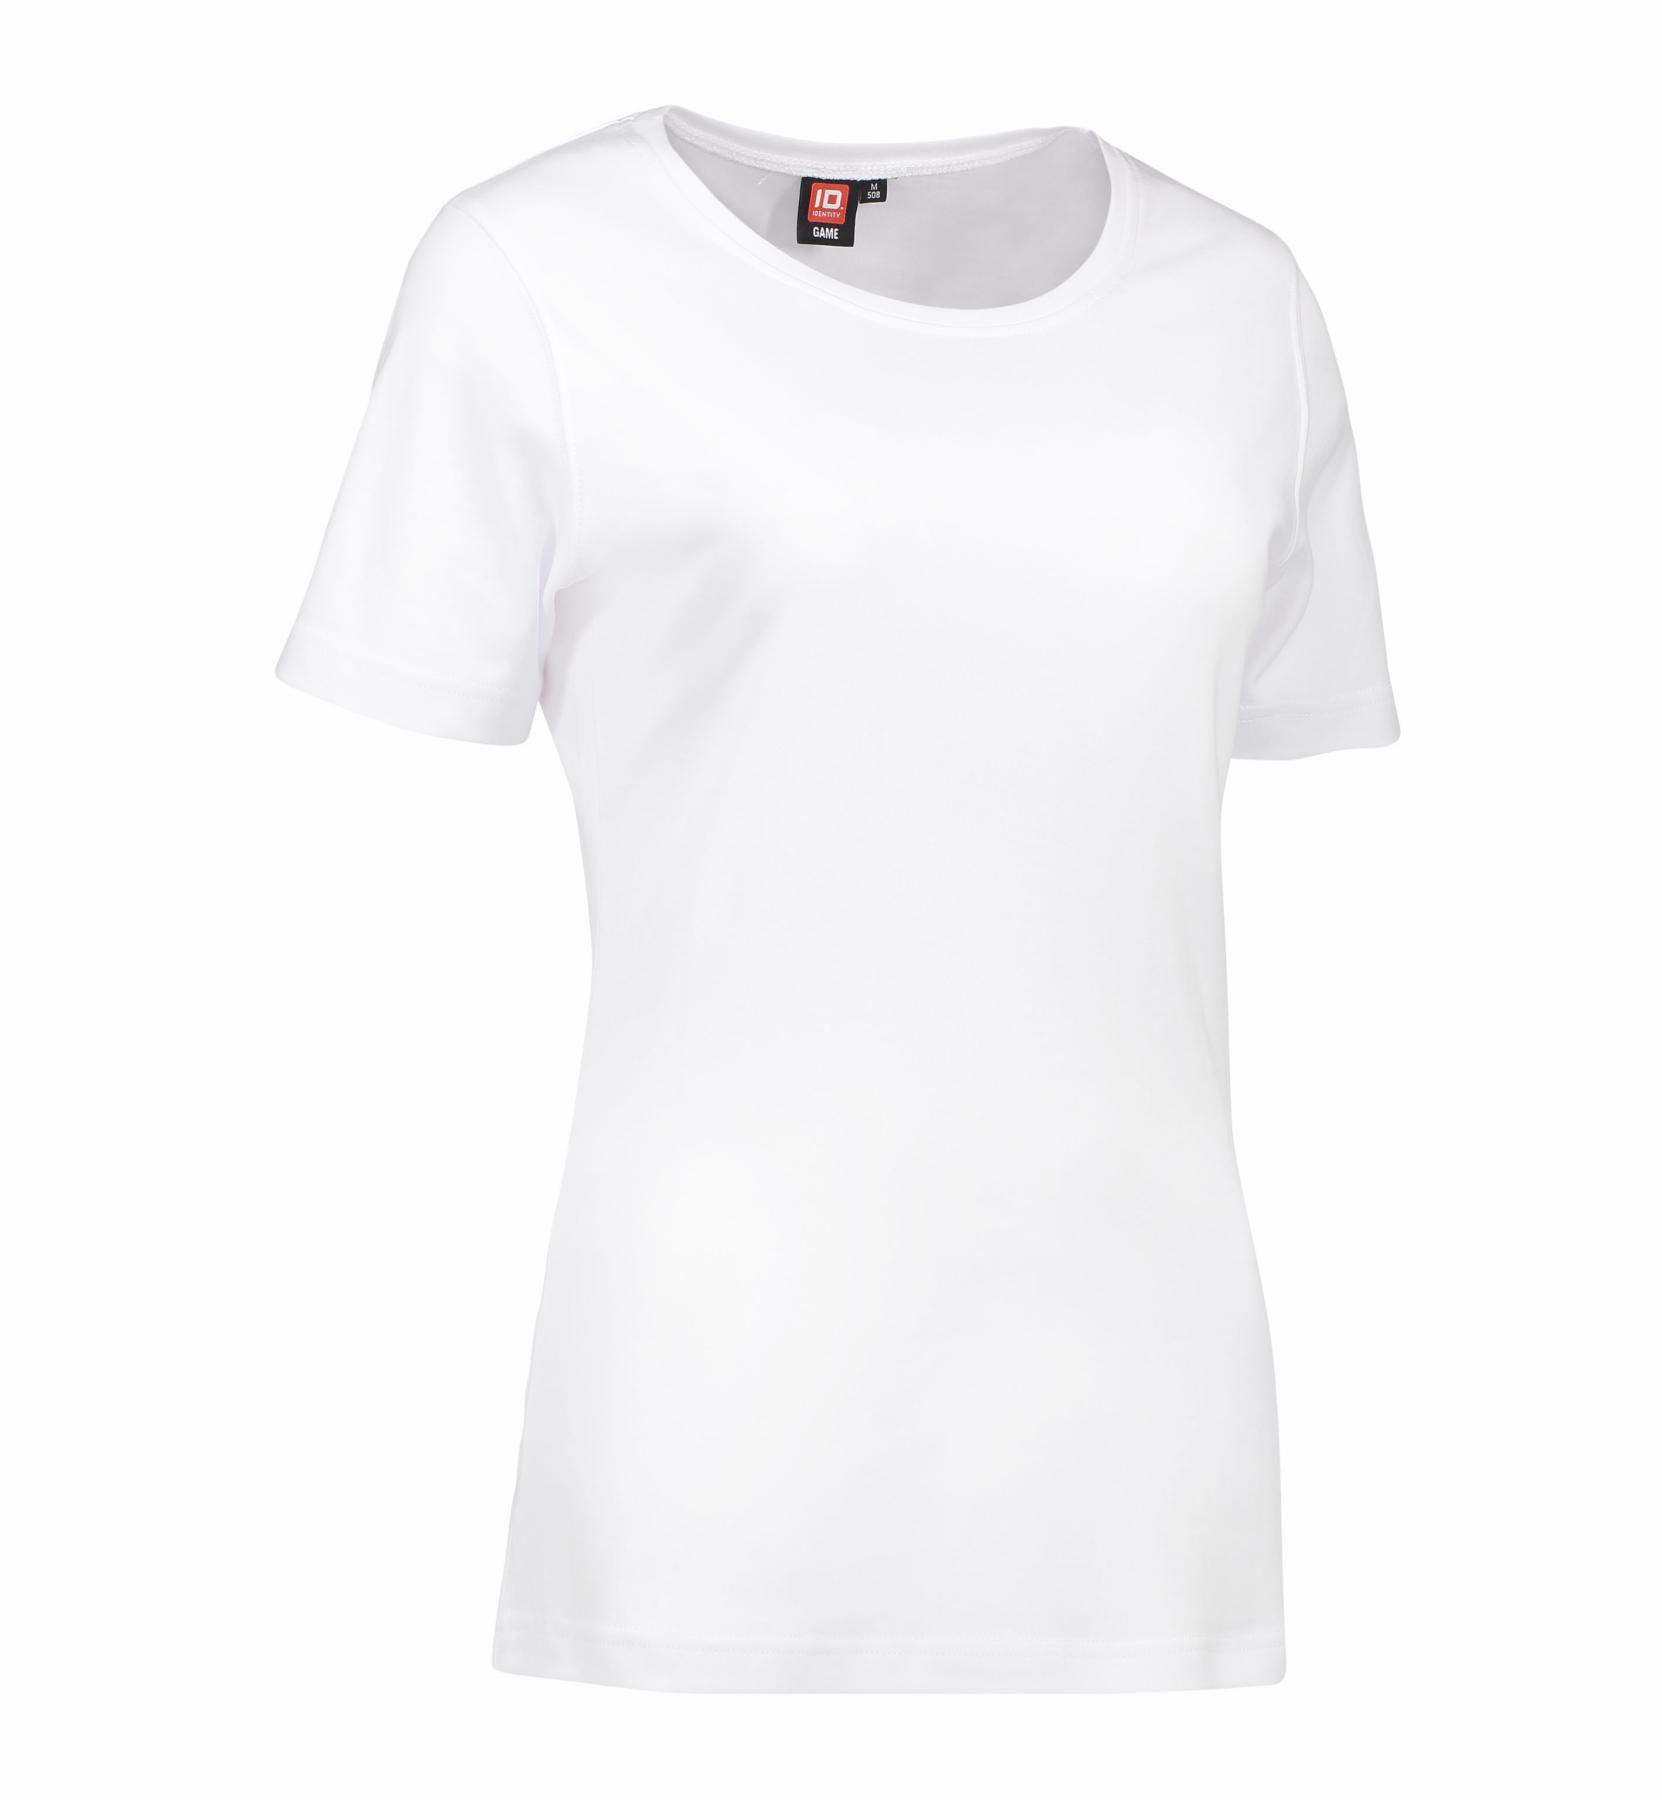 ID® Interlock Damen T-Shirt Rundhals